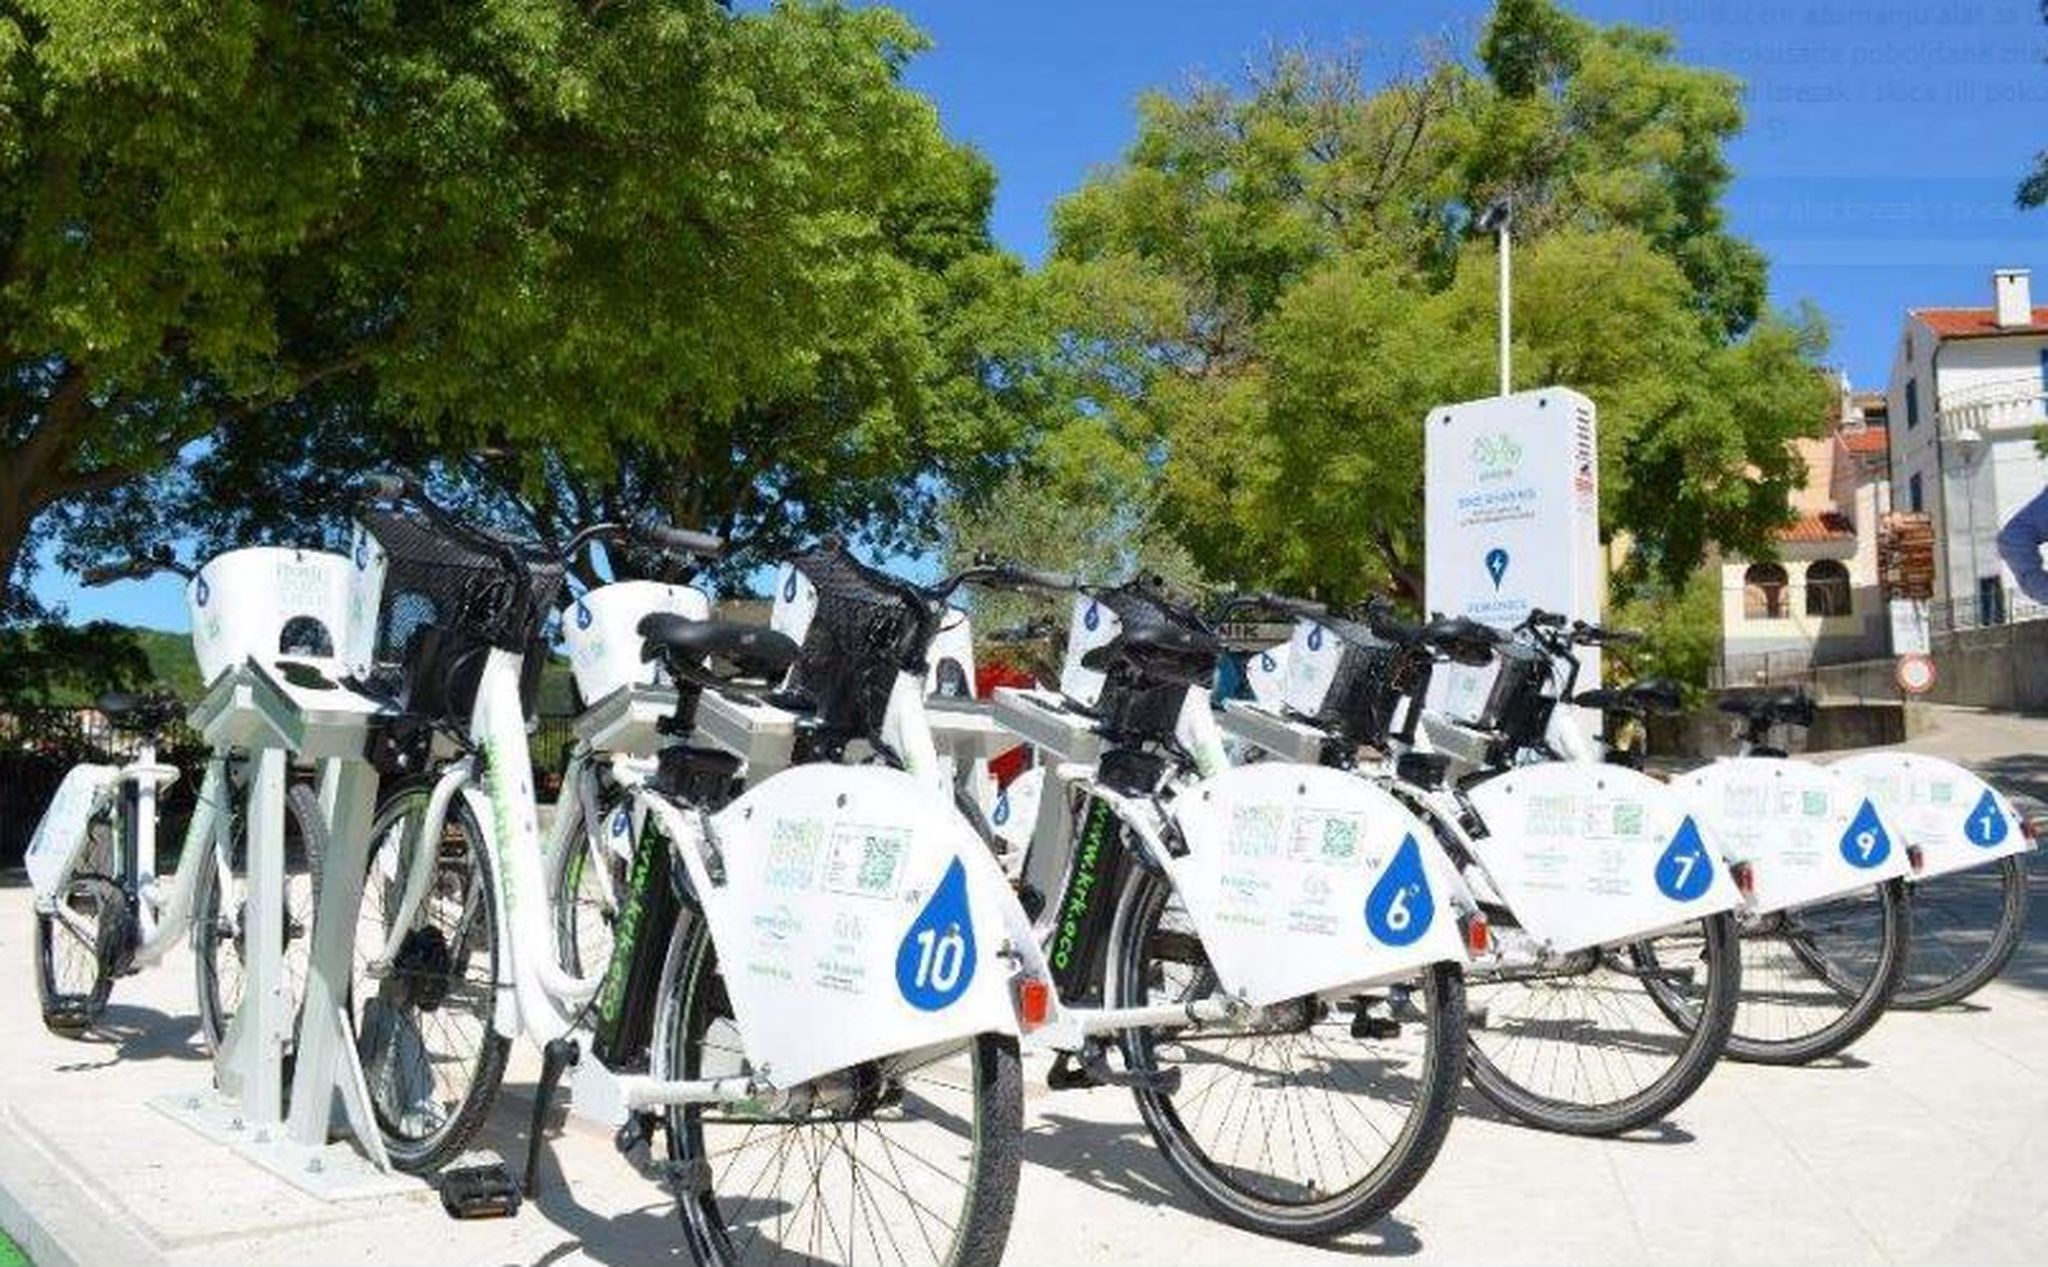 Smart Island Krk brinut će i o upravljanju sustavom javnog iznajmljivanja bicikala Krk-Bike / Foto PONIKVE